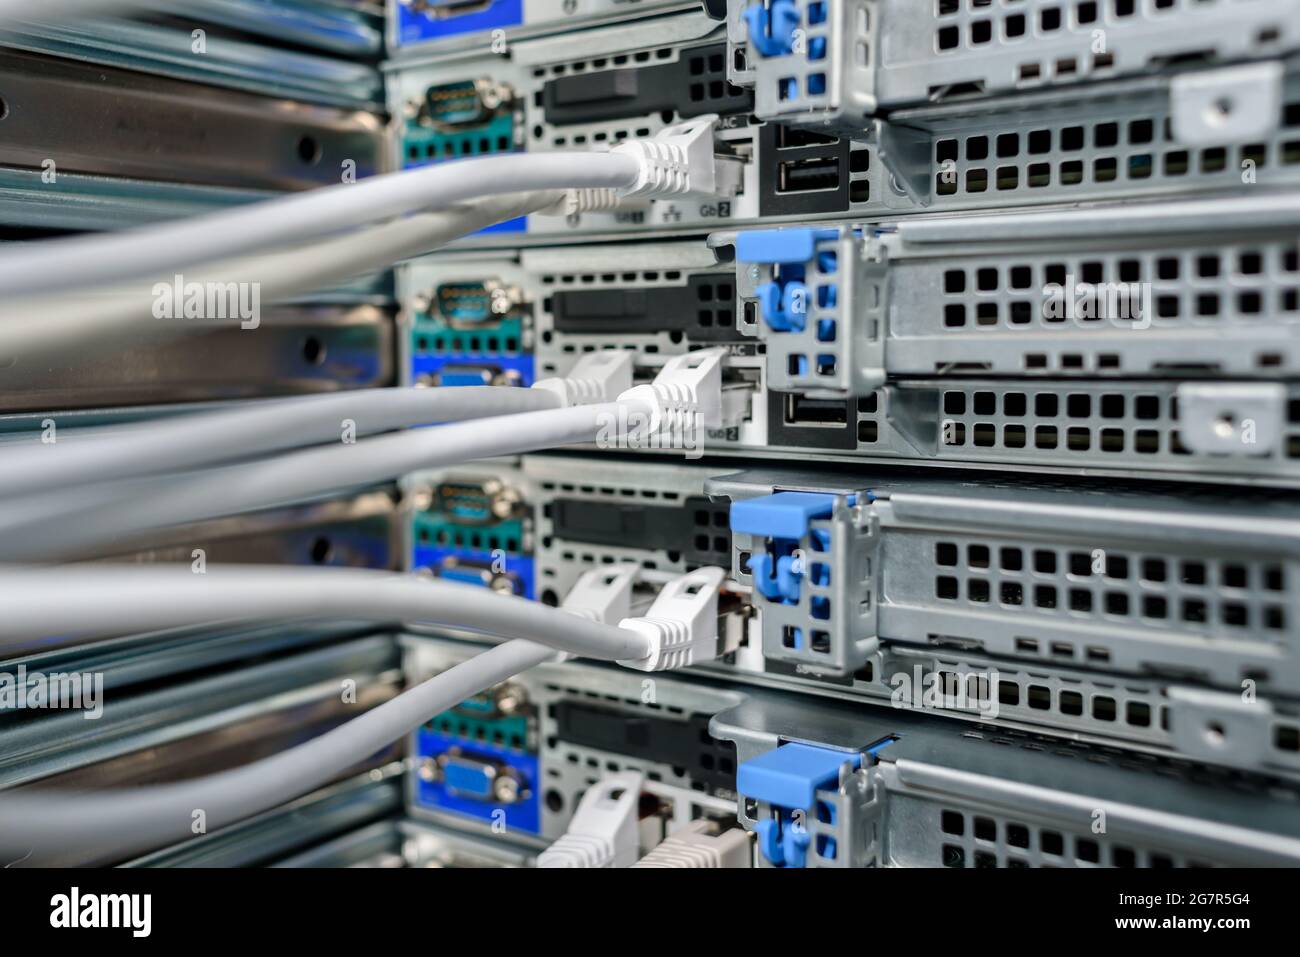 Servidores, switches o routers en funcionamiento en el centro de datos con una gran cantidad de lámparas y cables LED Foto de stock